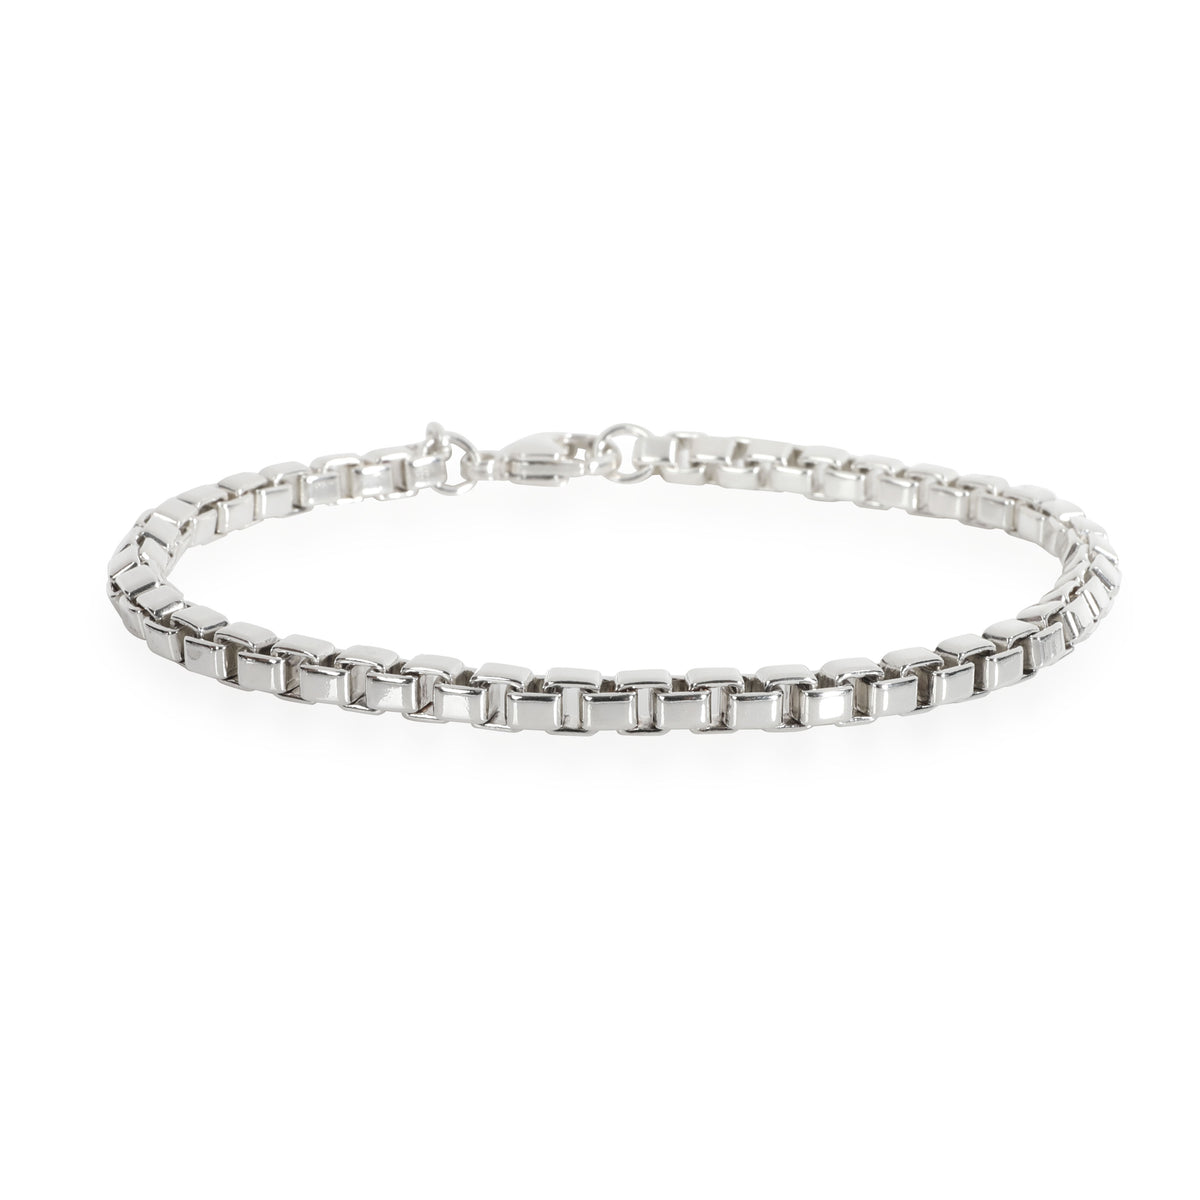 Tiffany & Co. Venetian Link Bracelet in Sterling Silver